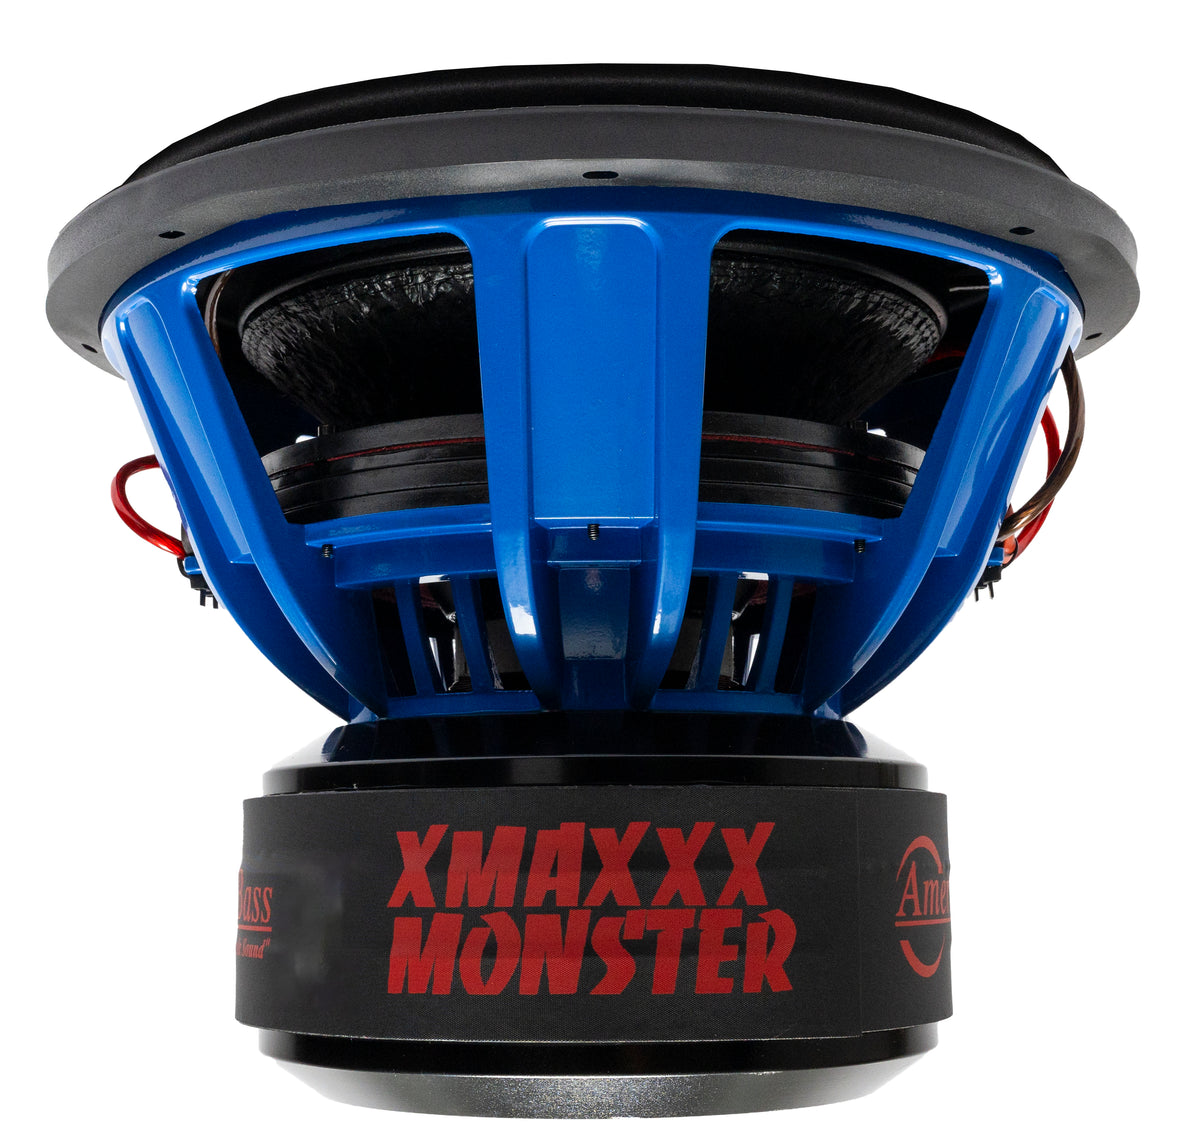 XMAXXX Monster 15" Subwoofer